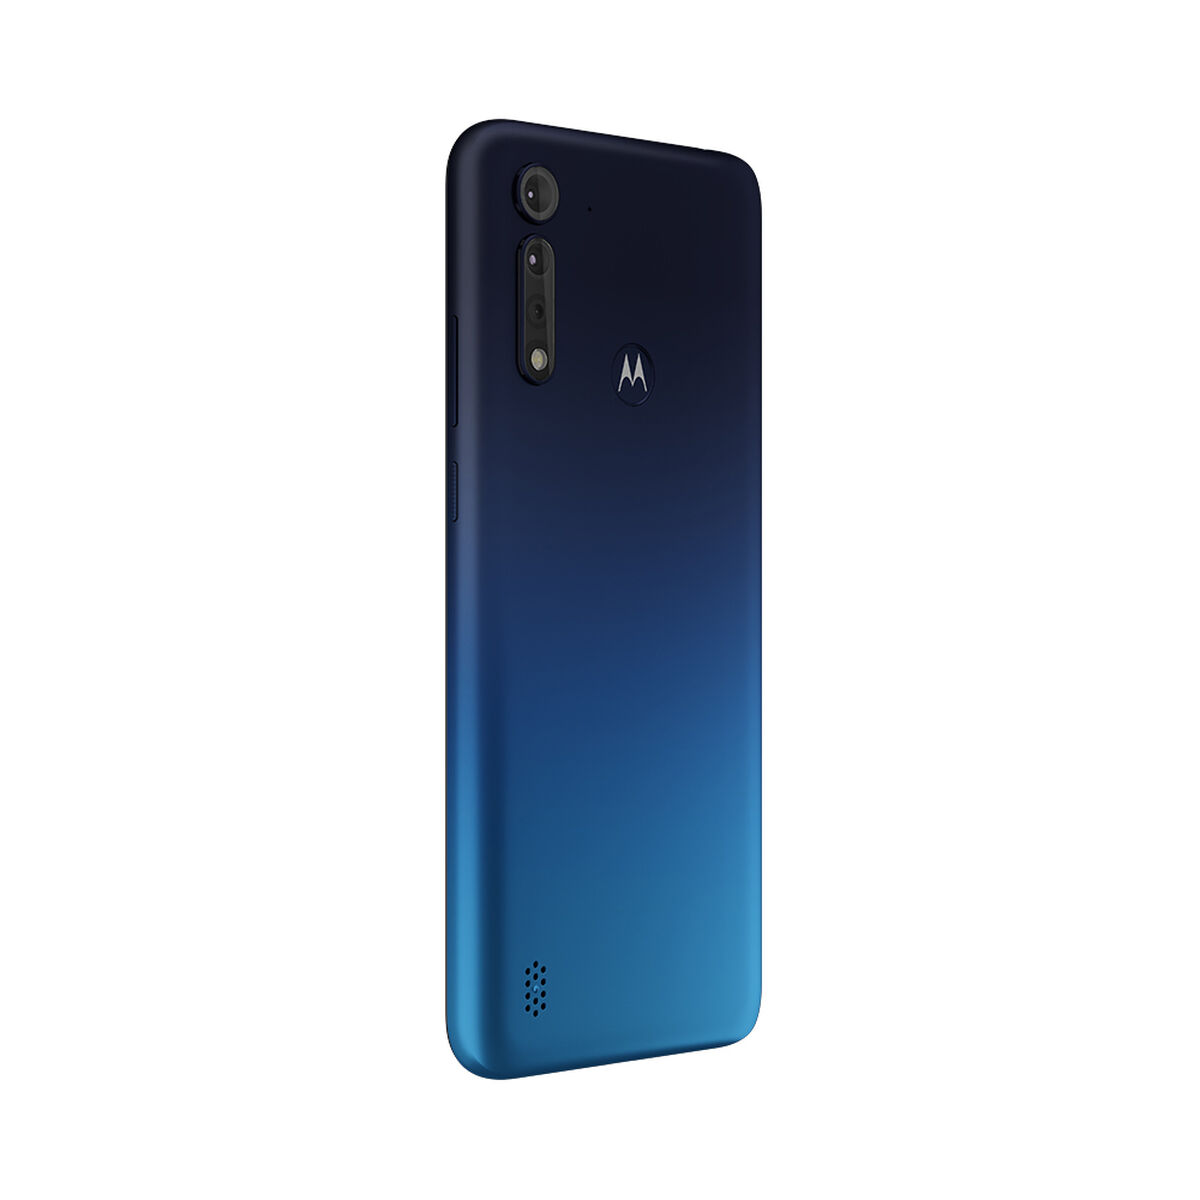 Celular Motorola G8 Power Lite 64GB 6,5" Mora Azul Liberado